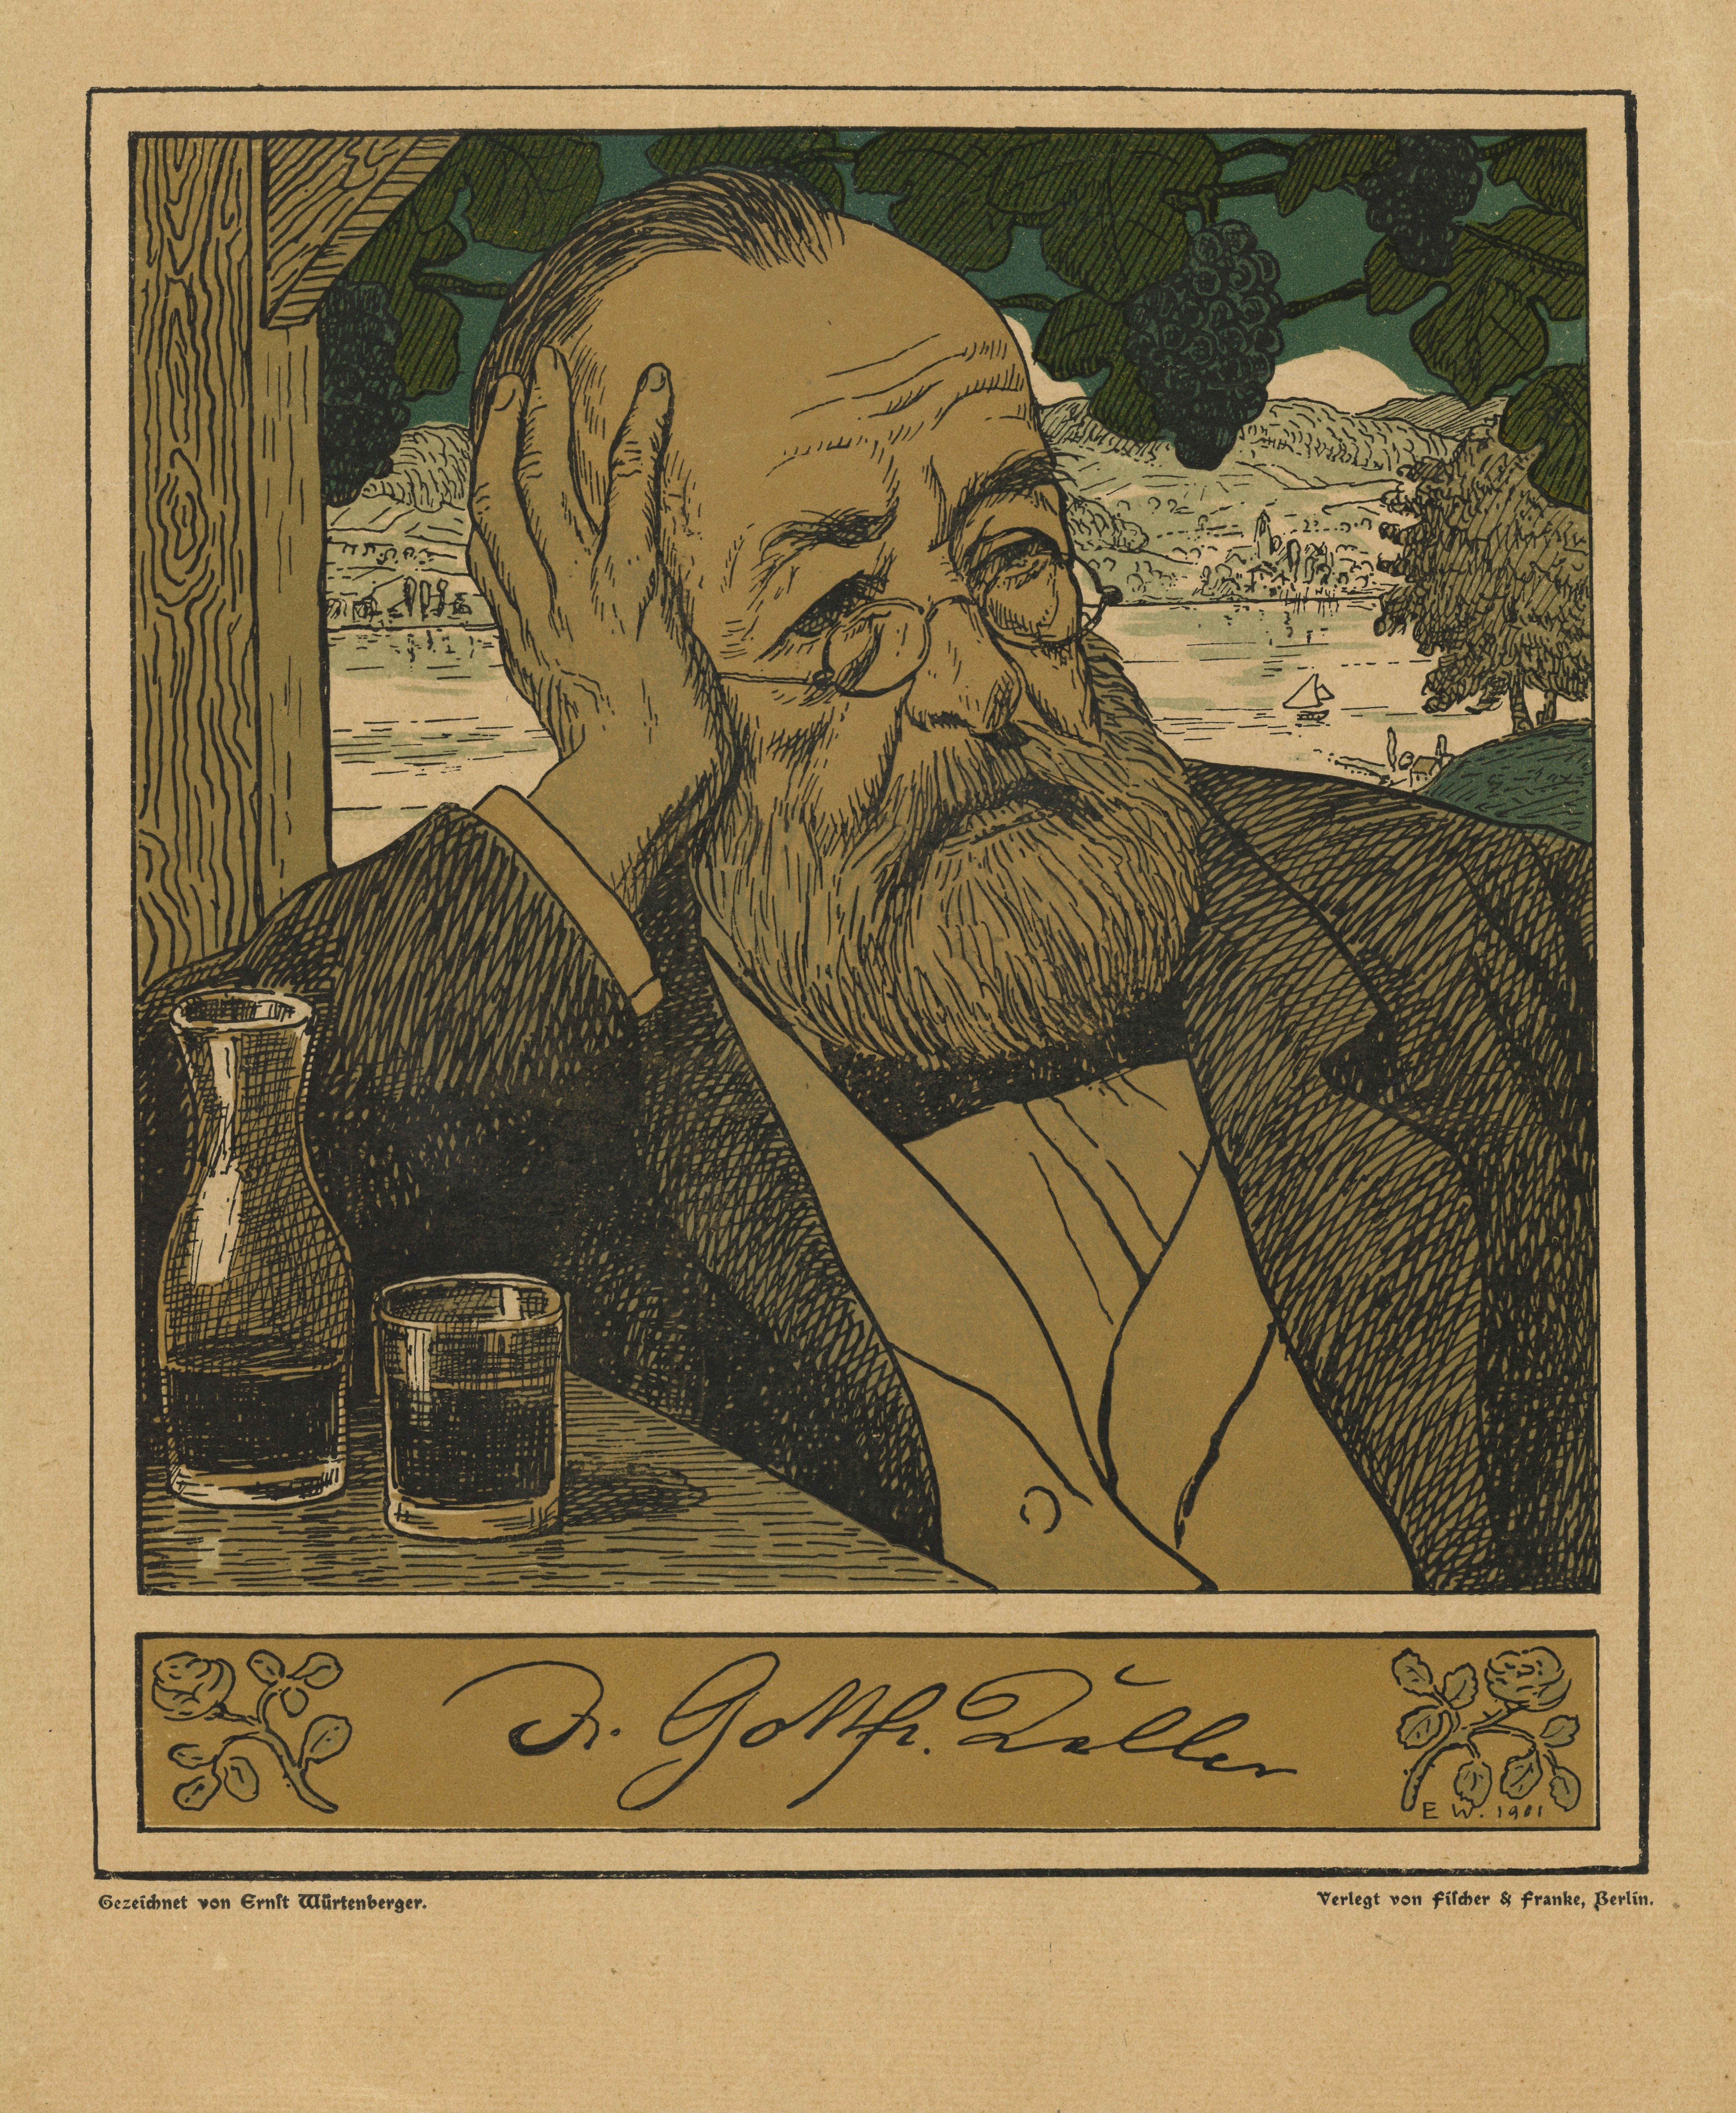 Keller, Gottfried (1819–1890), Dichter (Landesgeschichtliche Vereinigung für die Mark Brandenburg e.V., Archiv CC BY)